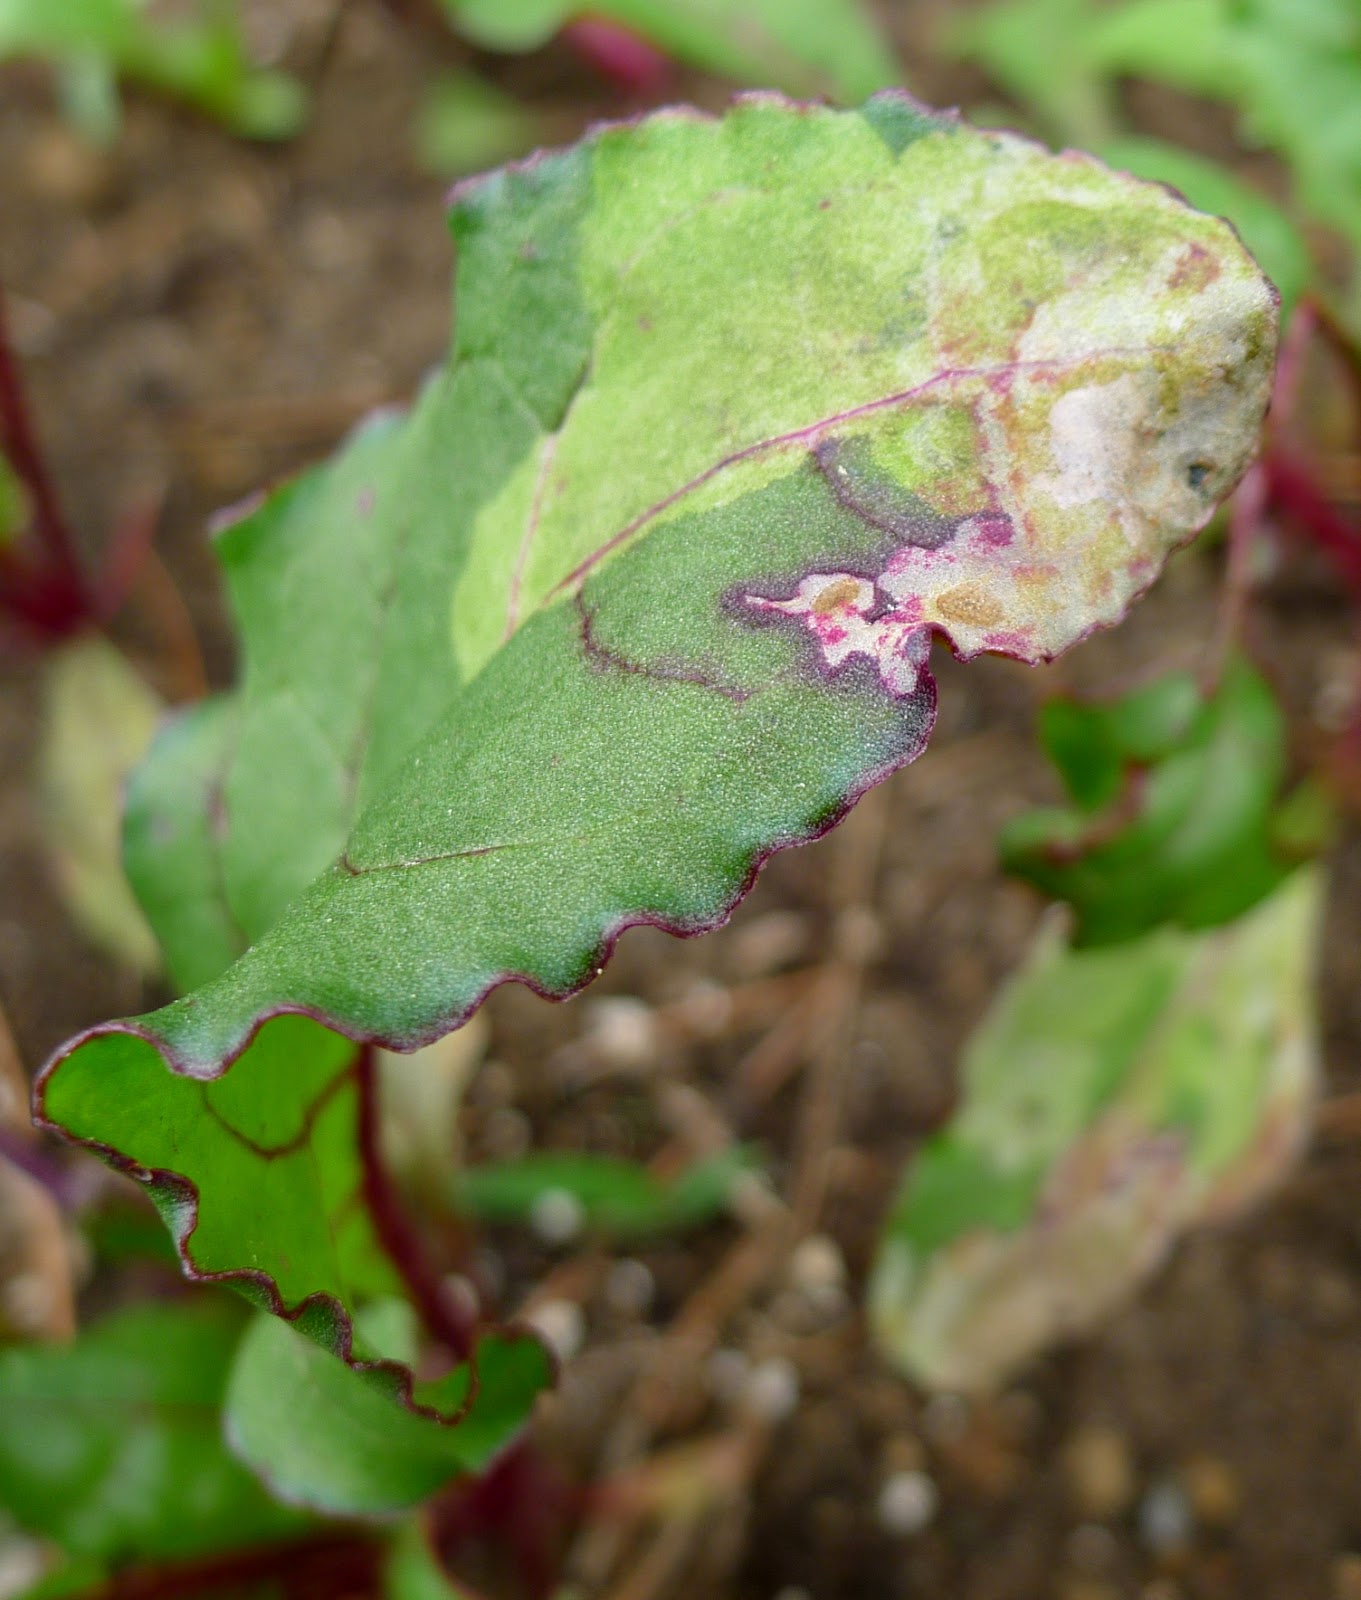 Leaf miner damage on beet leaf, organic pest control, urban farming